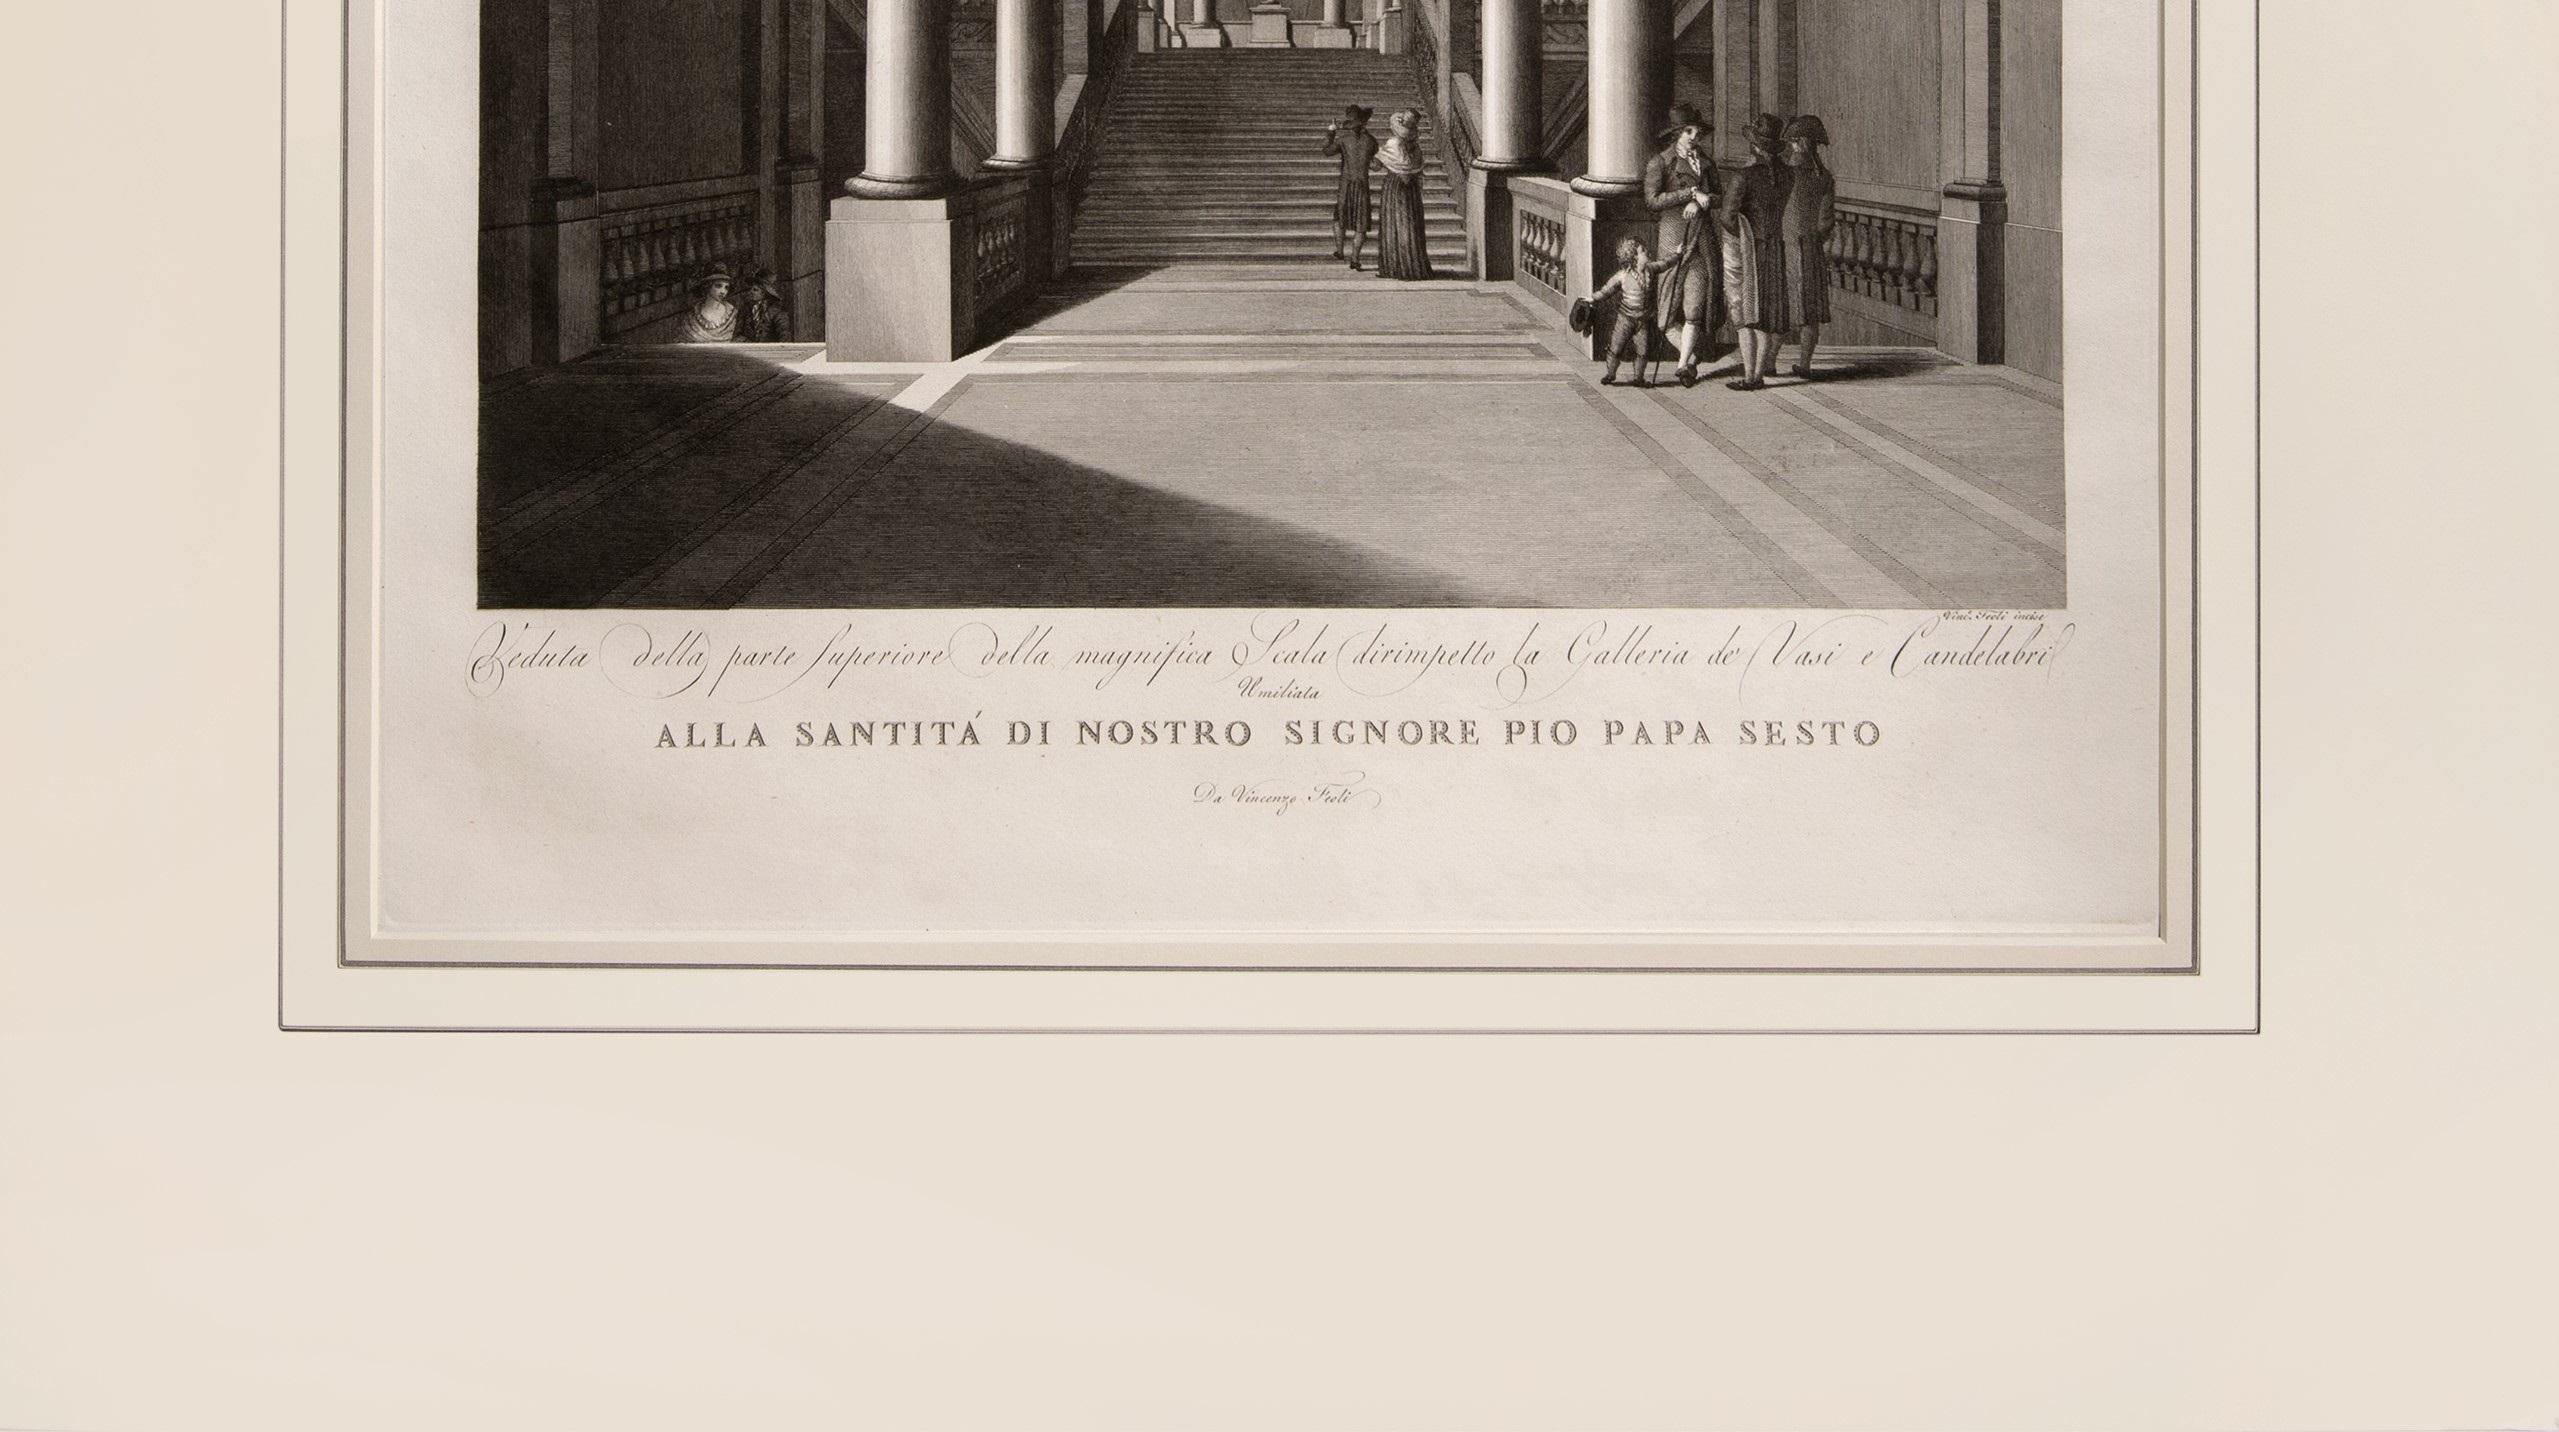 Prächtiger großer Teller, der das Vatikanische Museum illustriert – Print von FEOLI, Vincenzo.